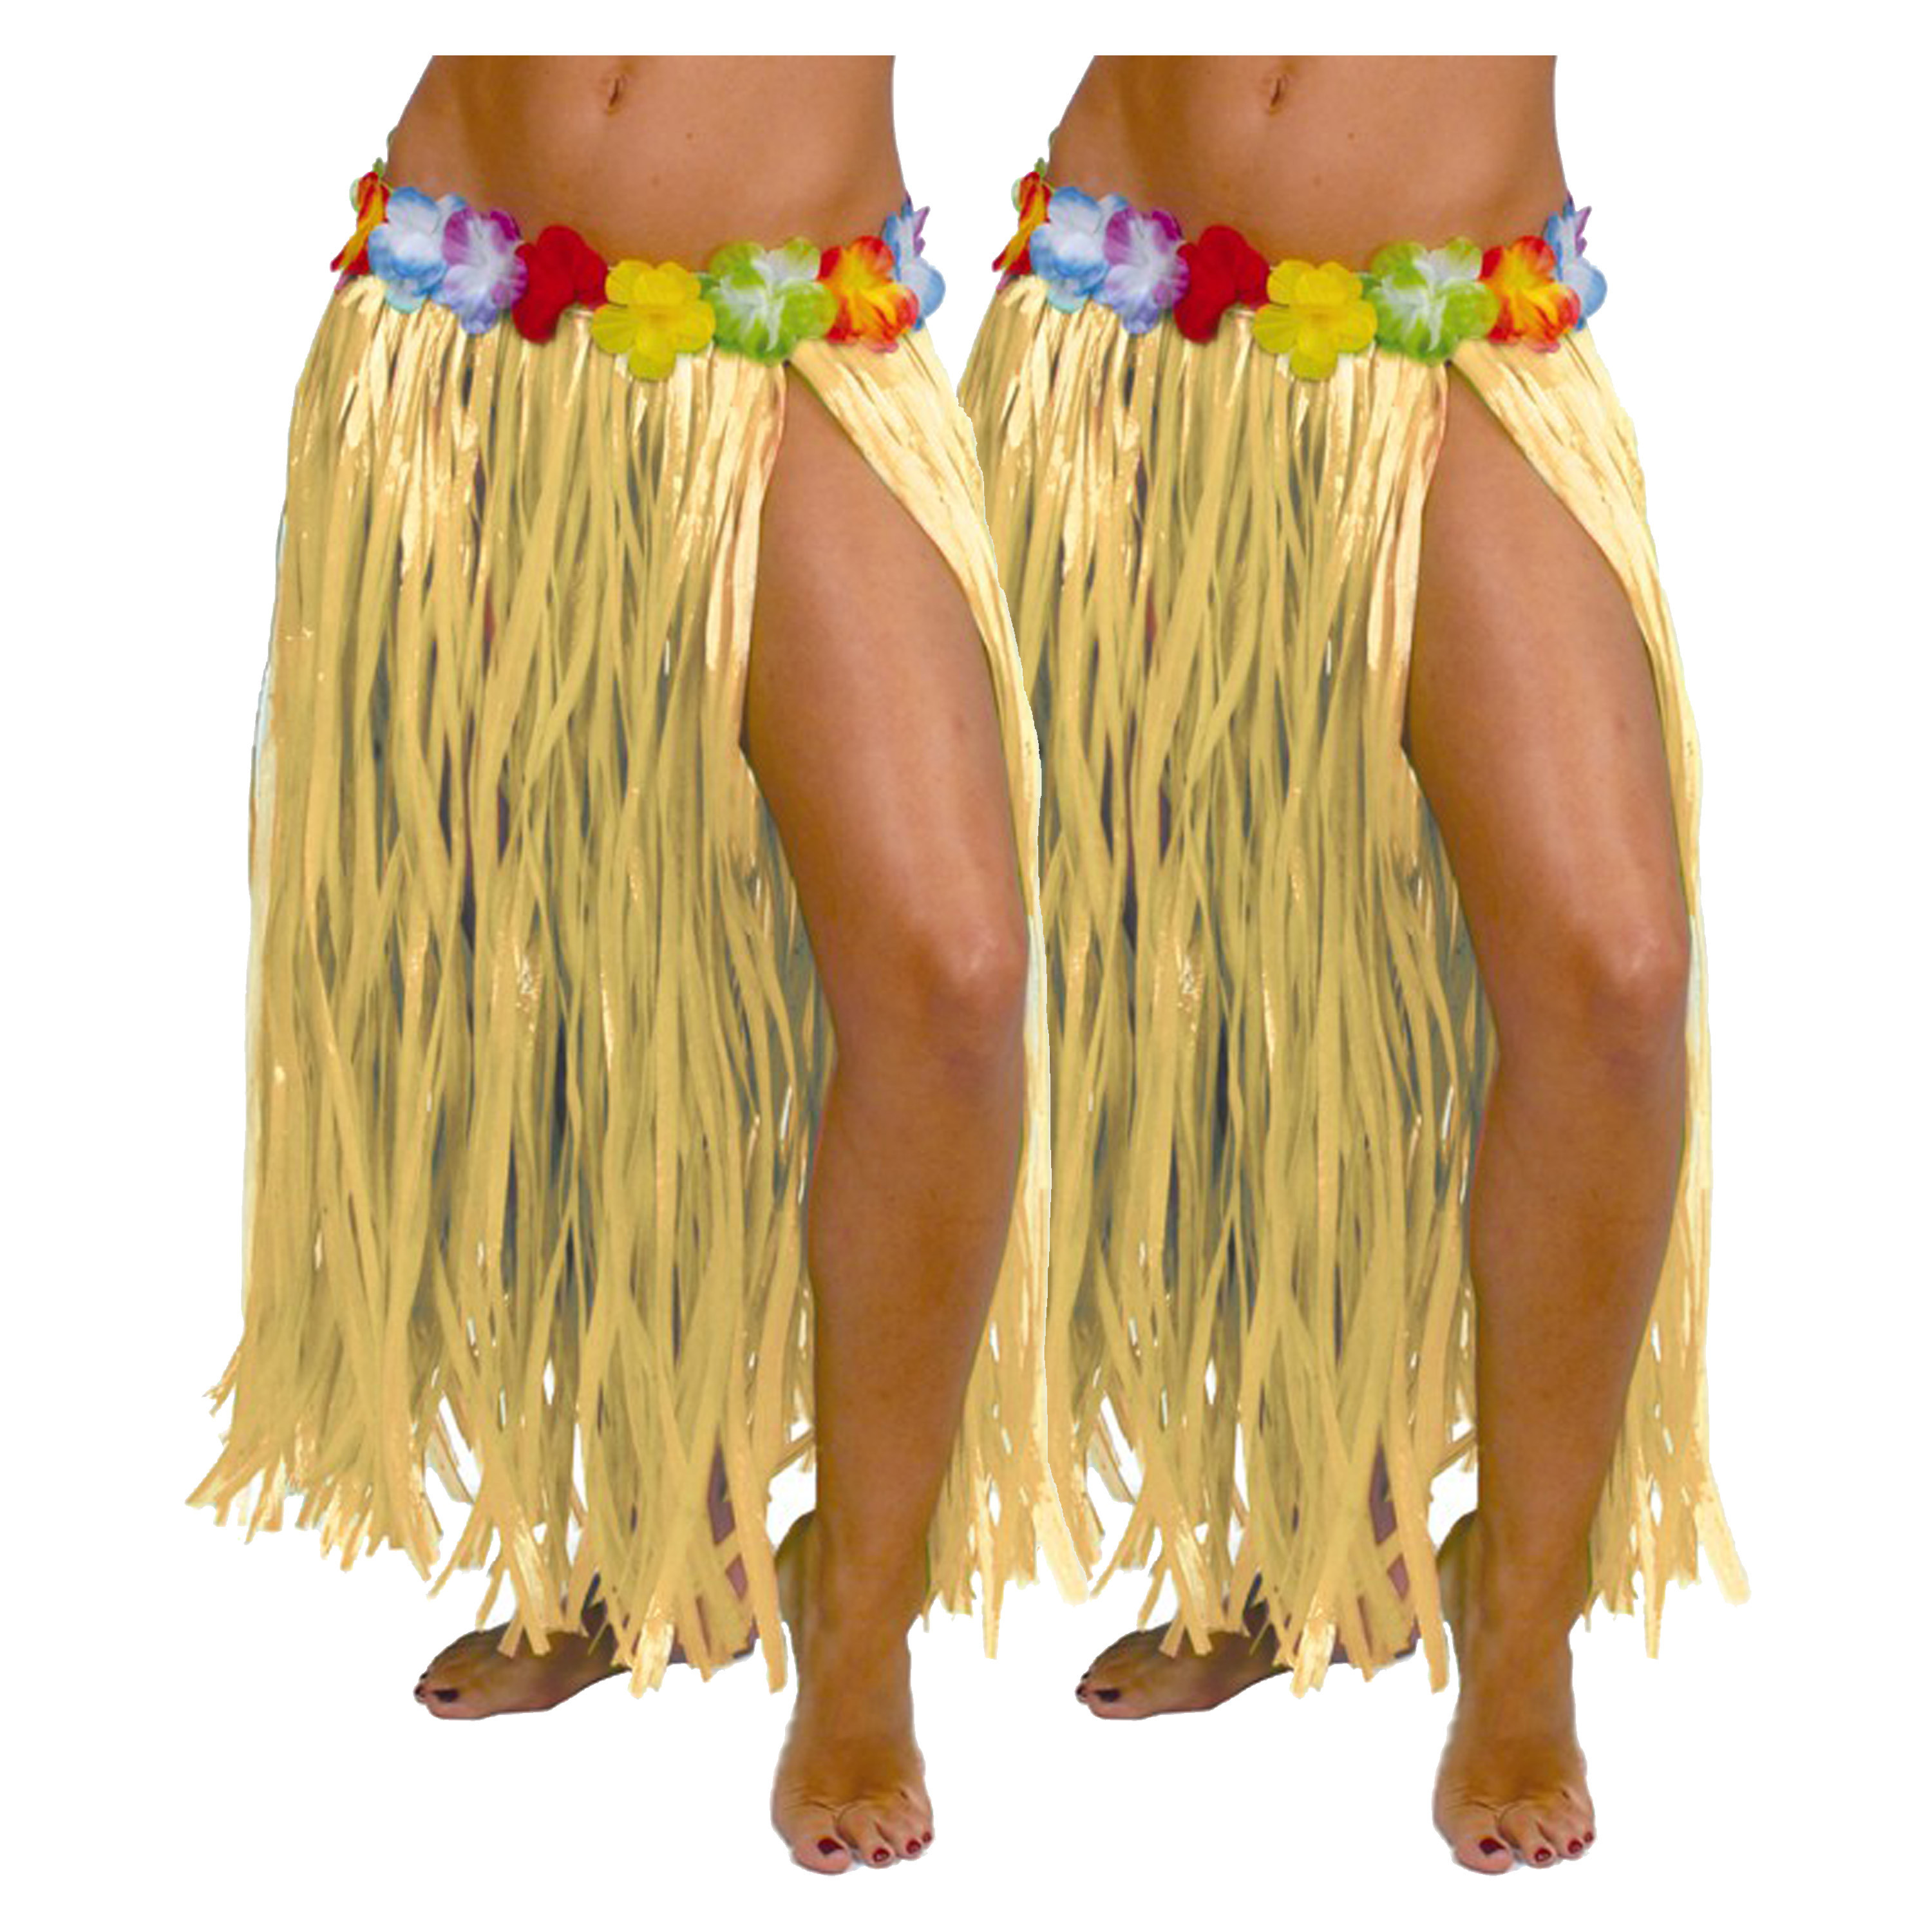 Fiestas Guirca Hawaii verkleed rokje 2x voor volwassenen naturel 75cm hoela rok tropisch